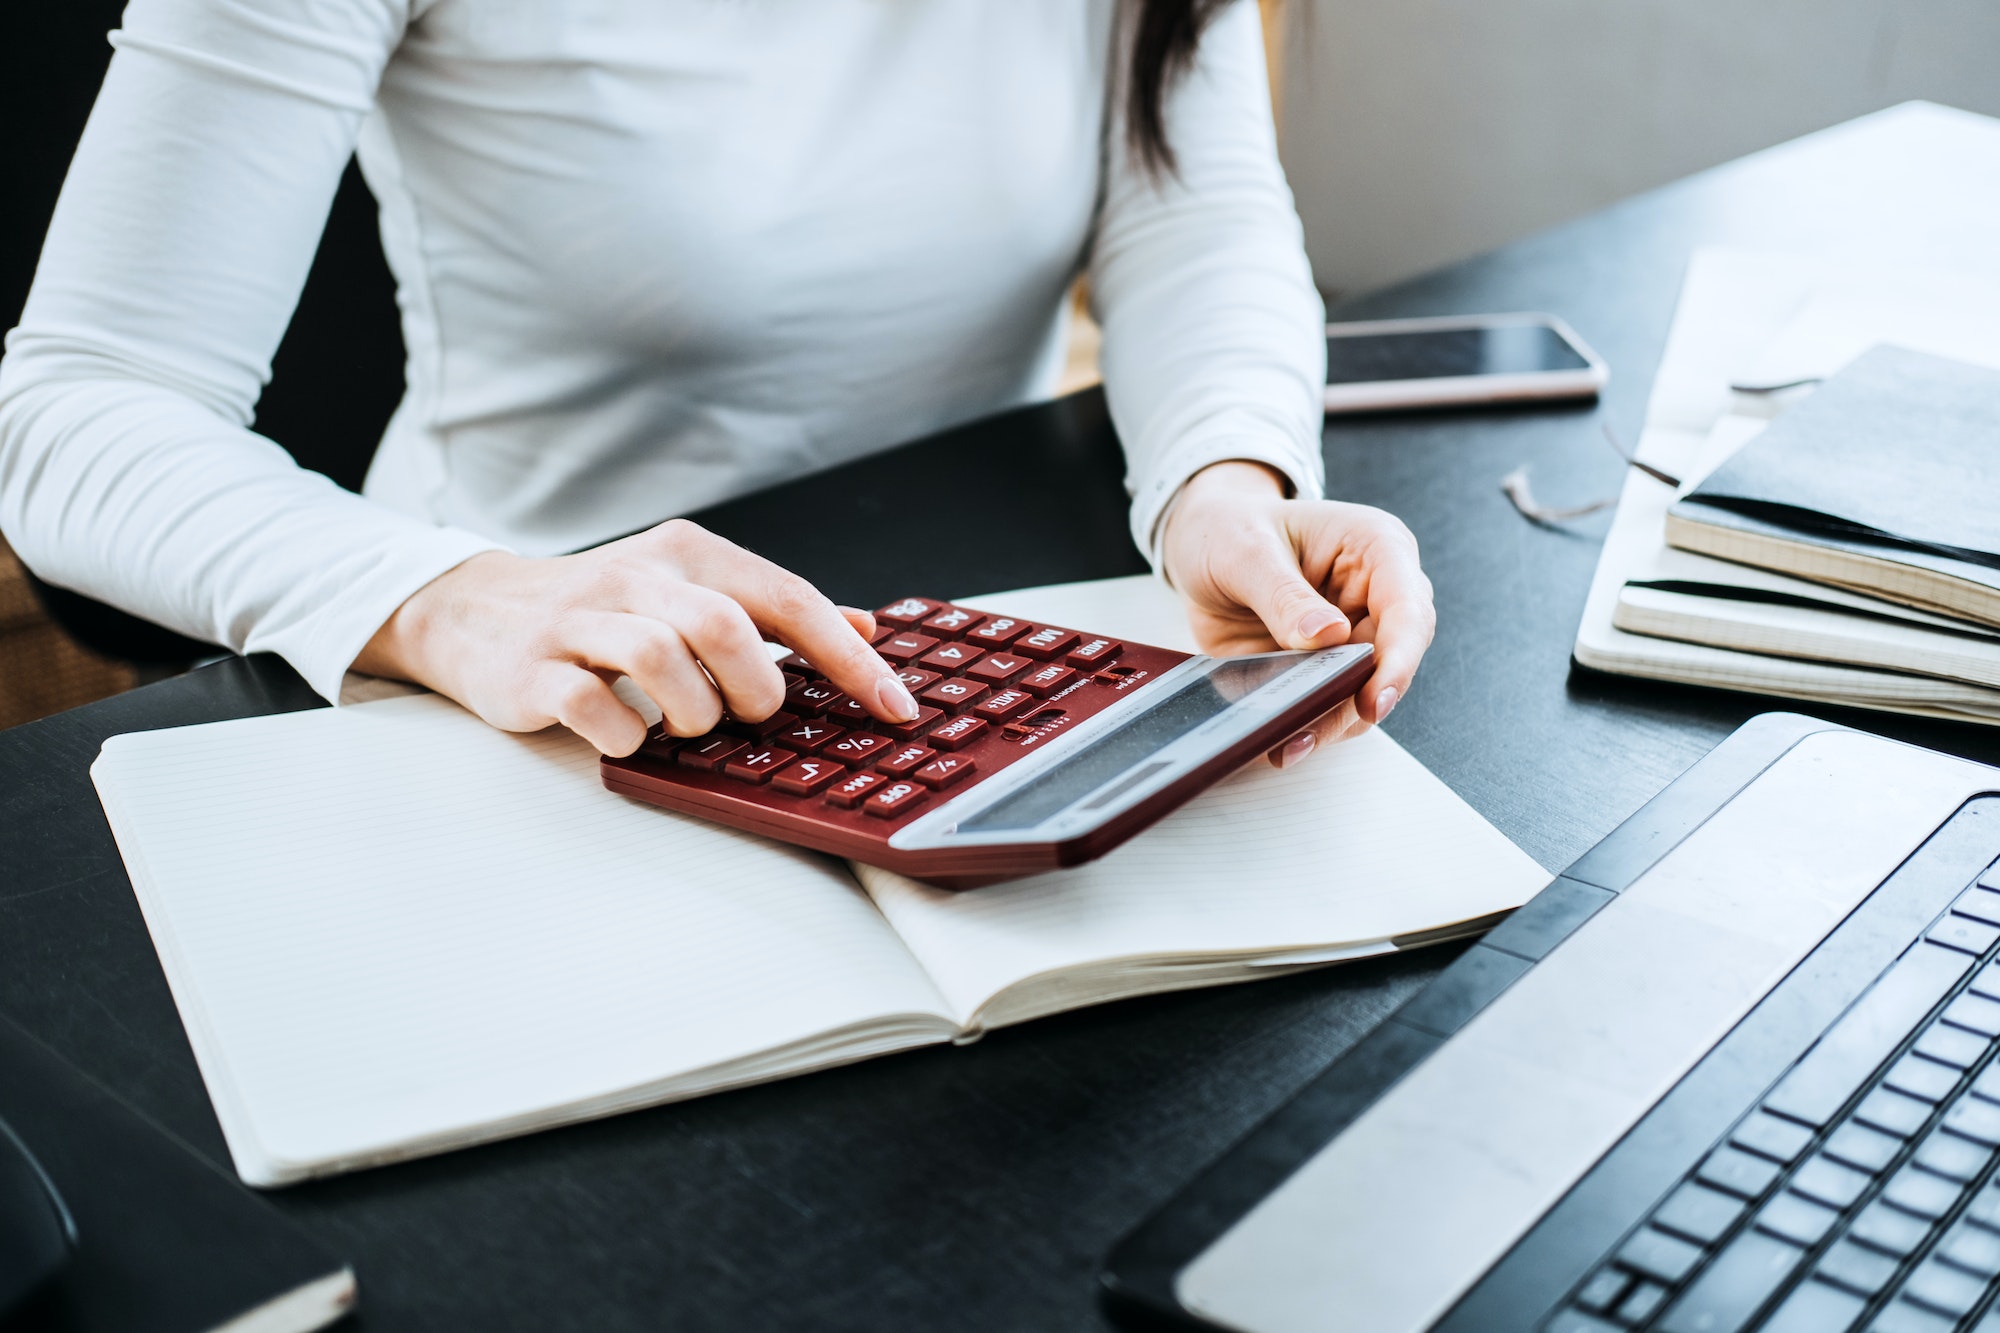 Formules de comptabilité équations pour les comptables. Femme comptable travaillant avec une calculatrice et un ordinateur portable.